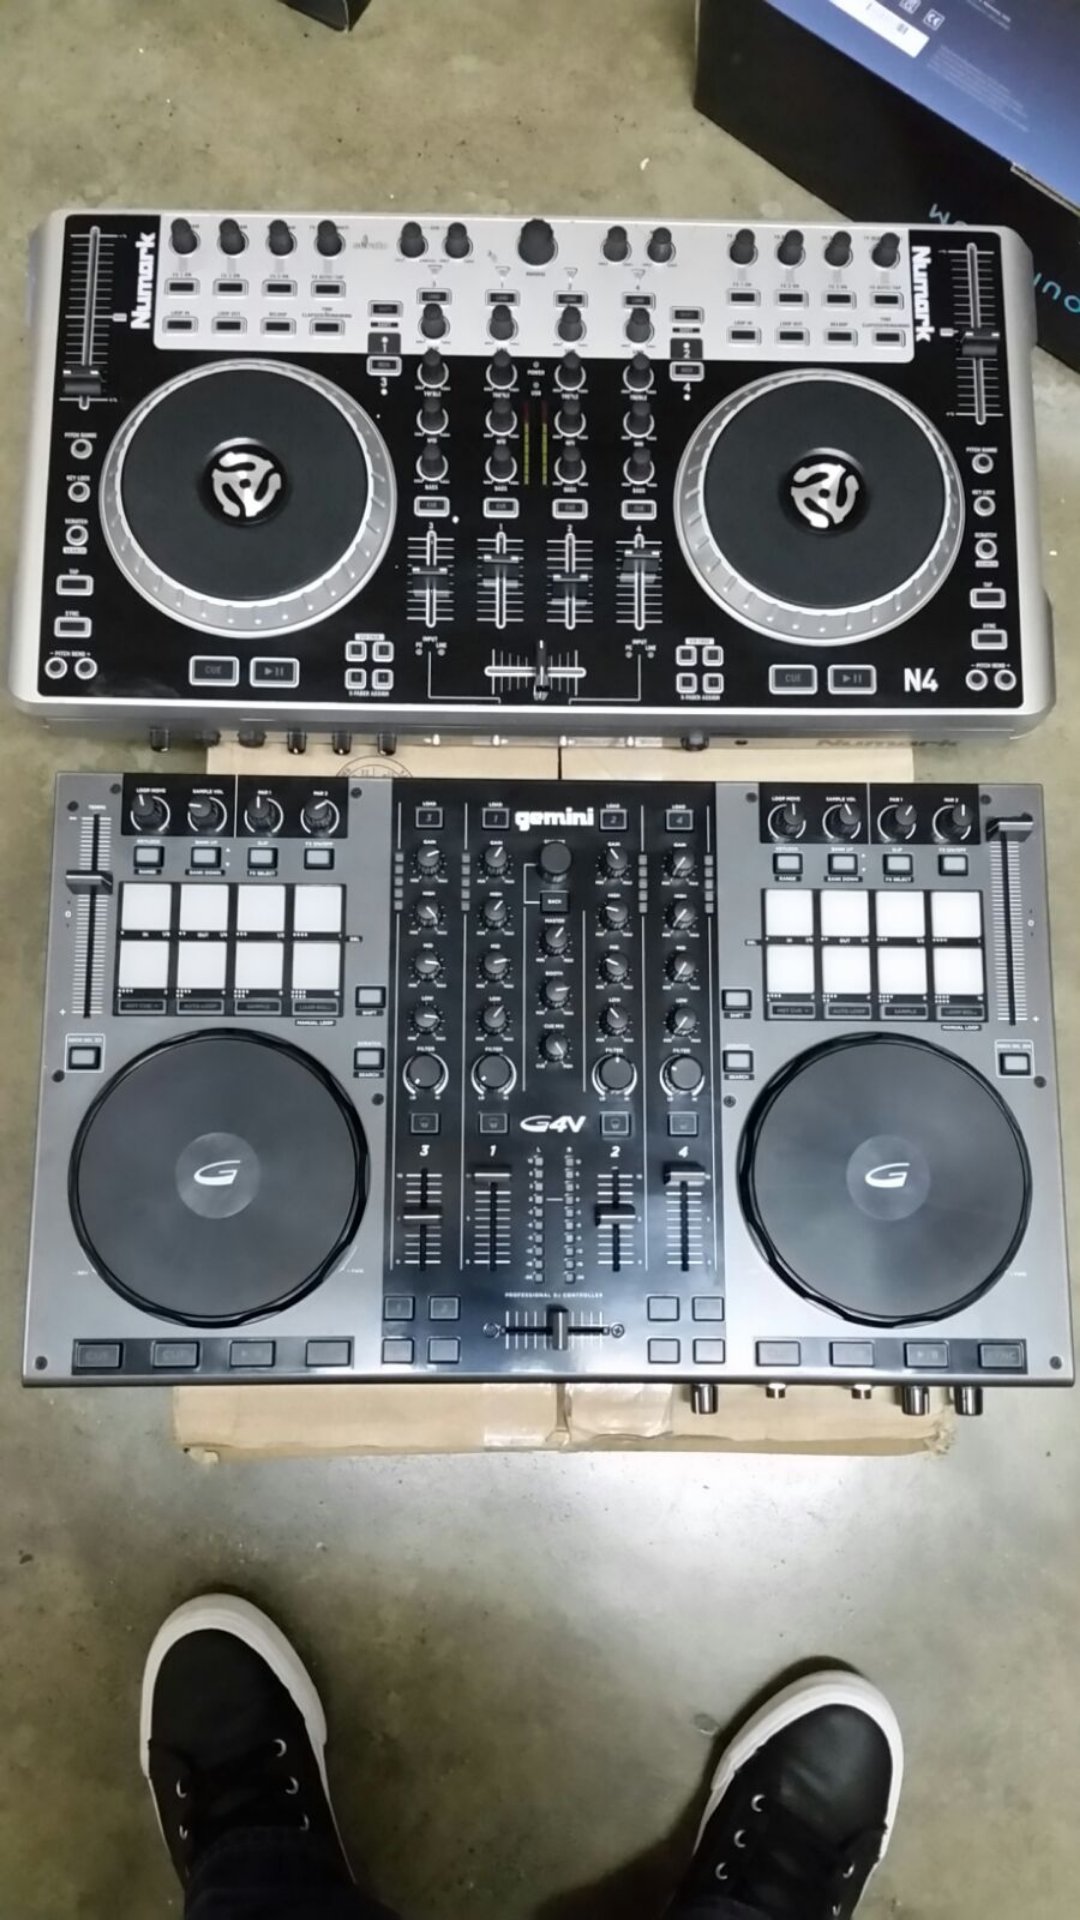 instrumentos musicales - Platos Mixer Controladores Musica DJ Pioneer Numark samsiph gb max xr 3